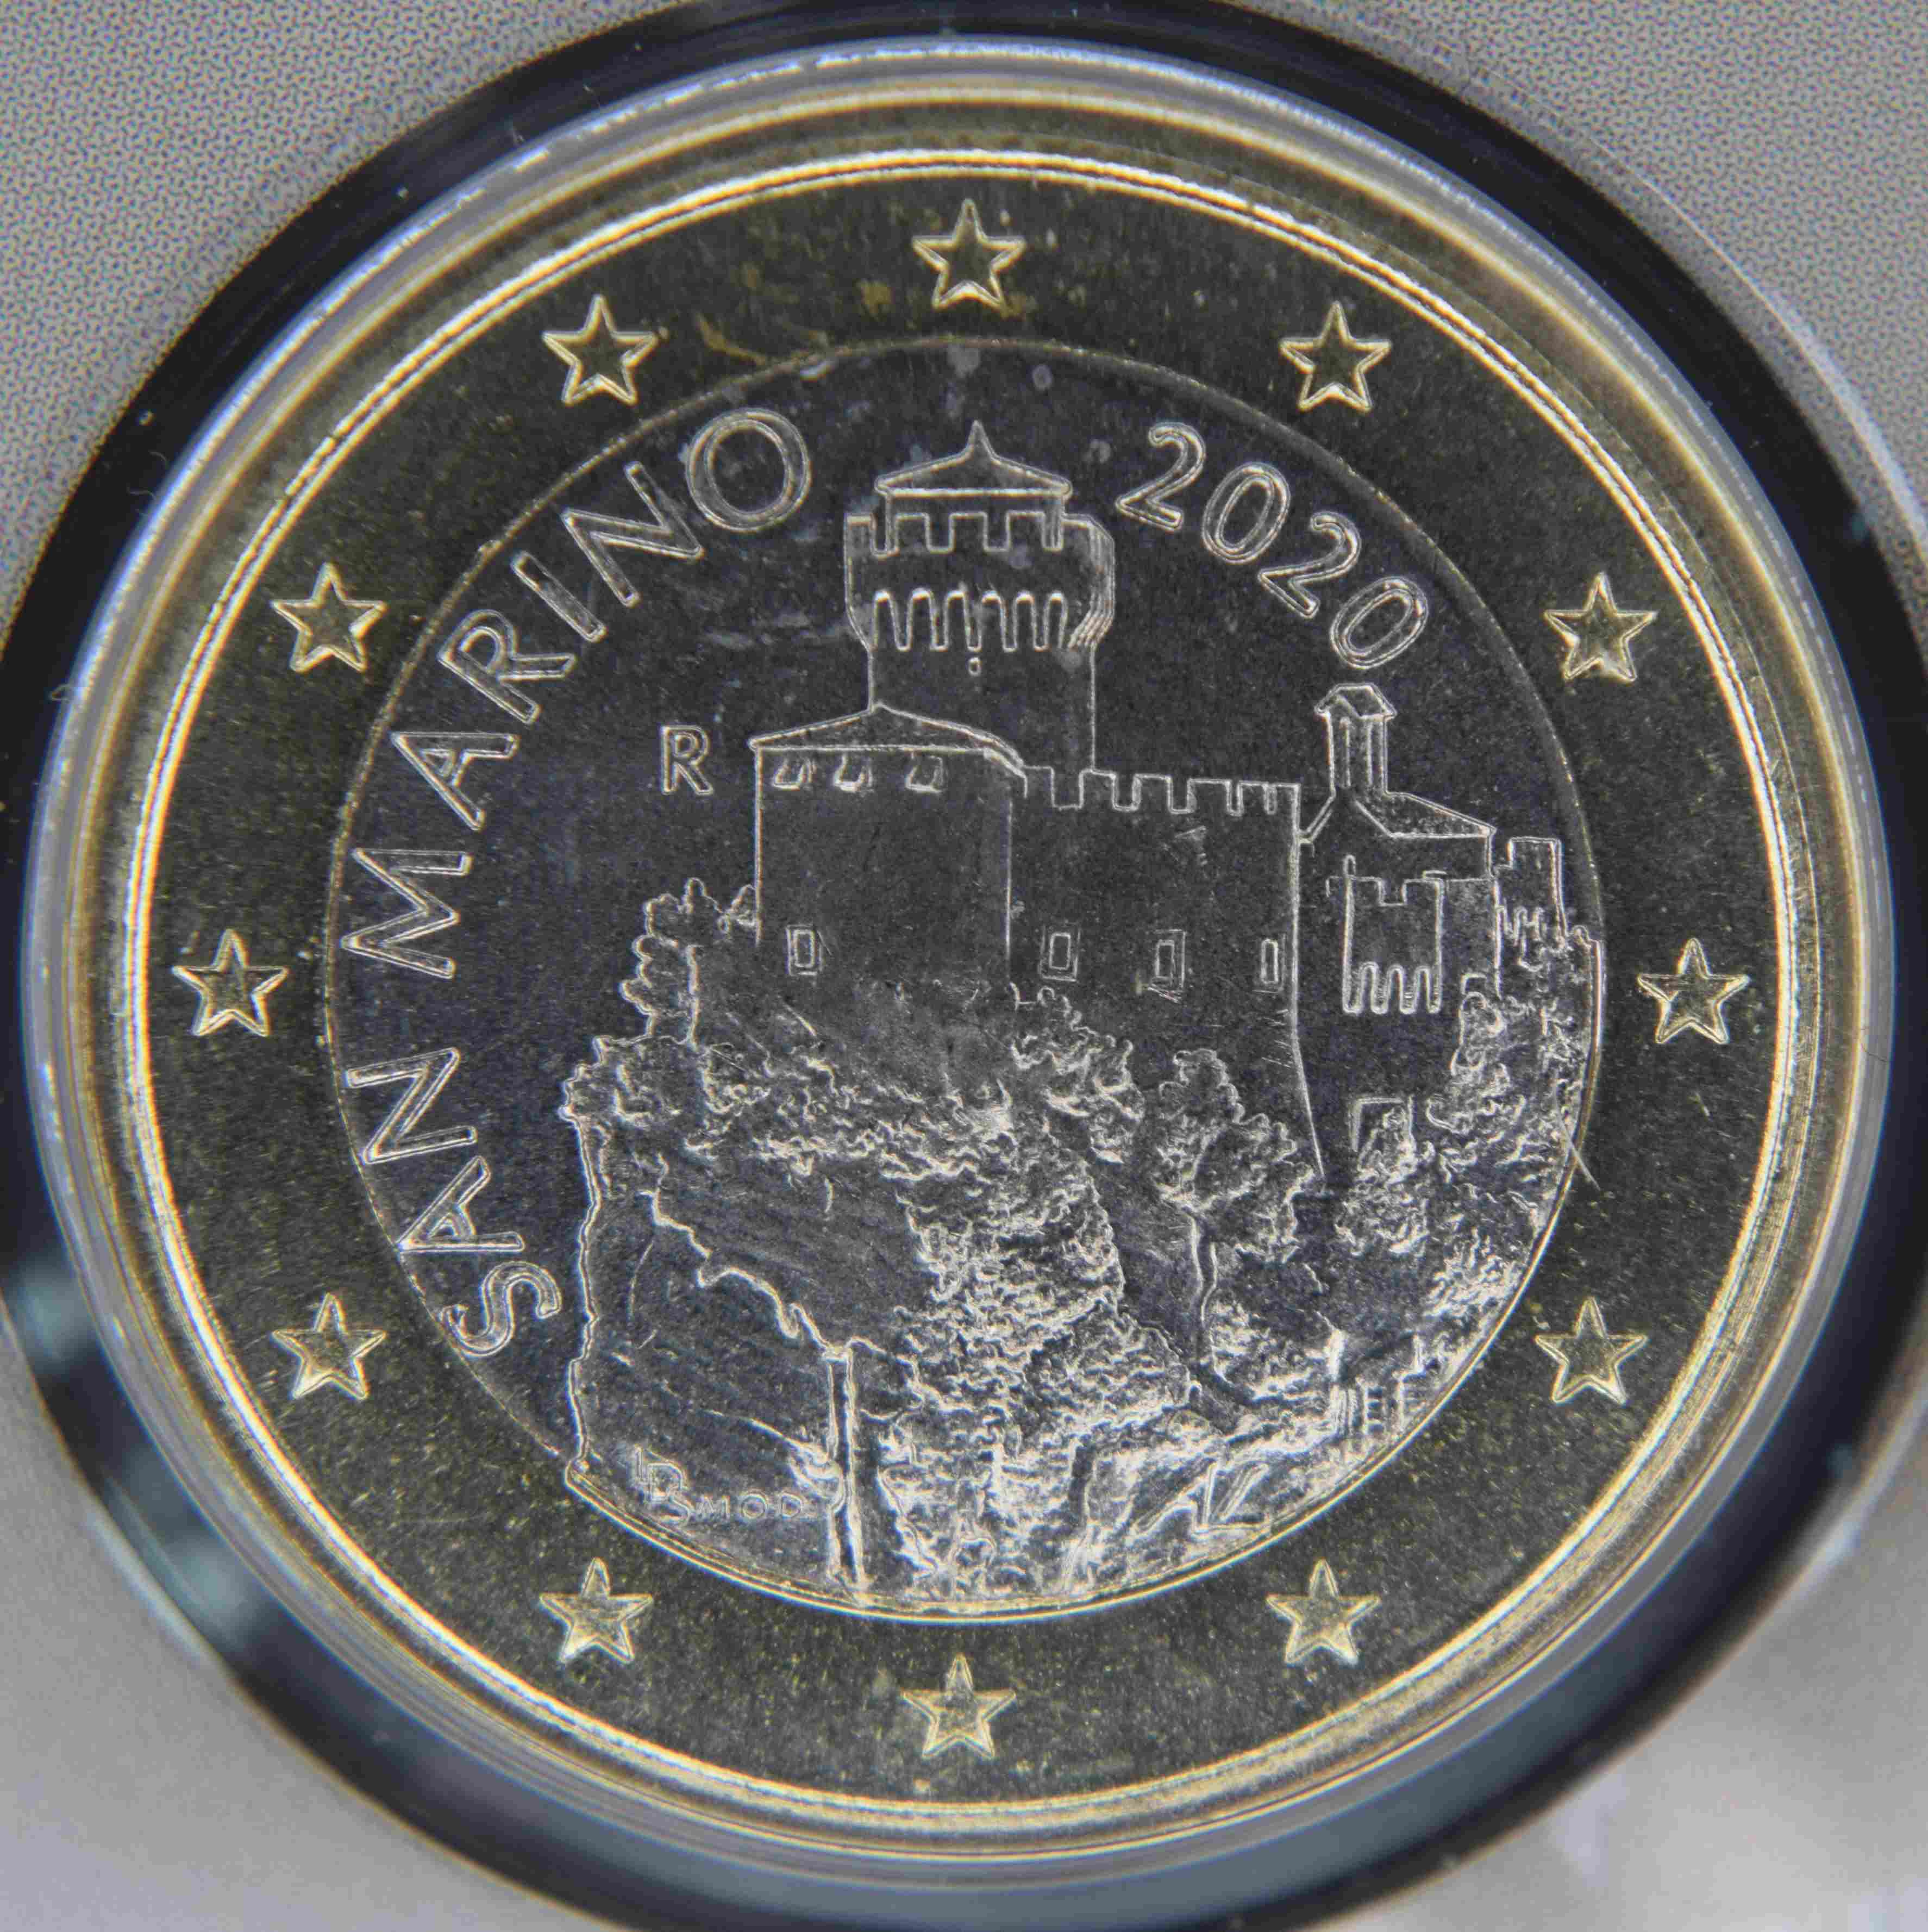 San Marino 1 Euro Münze 2020 - euro-muenzen.tv - Der Online Euromünzen